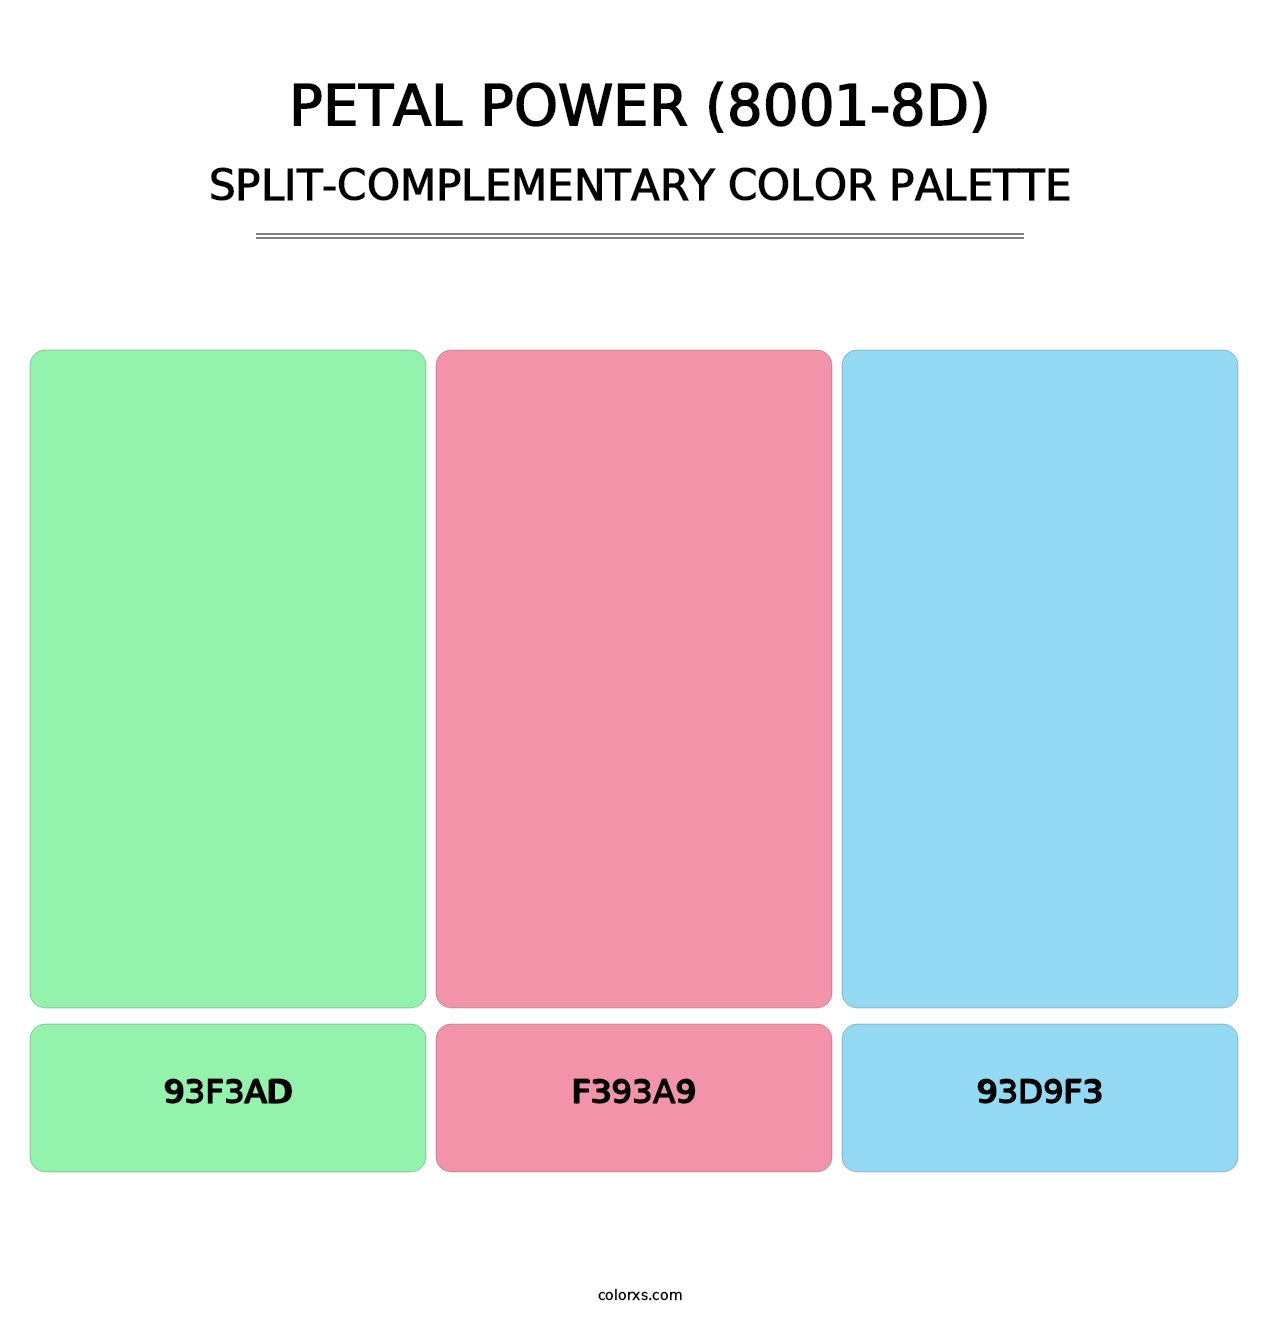 Petal Power (8001-8D) - Split-Complementary Color Palette